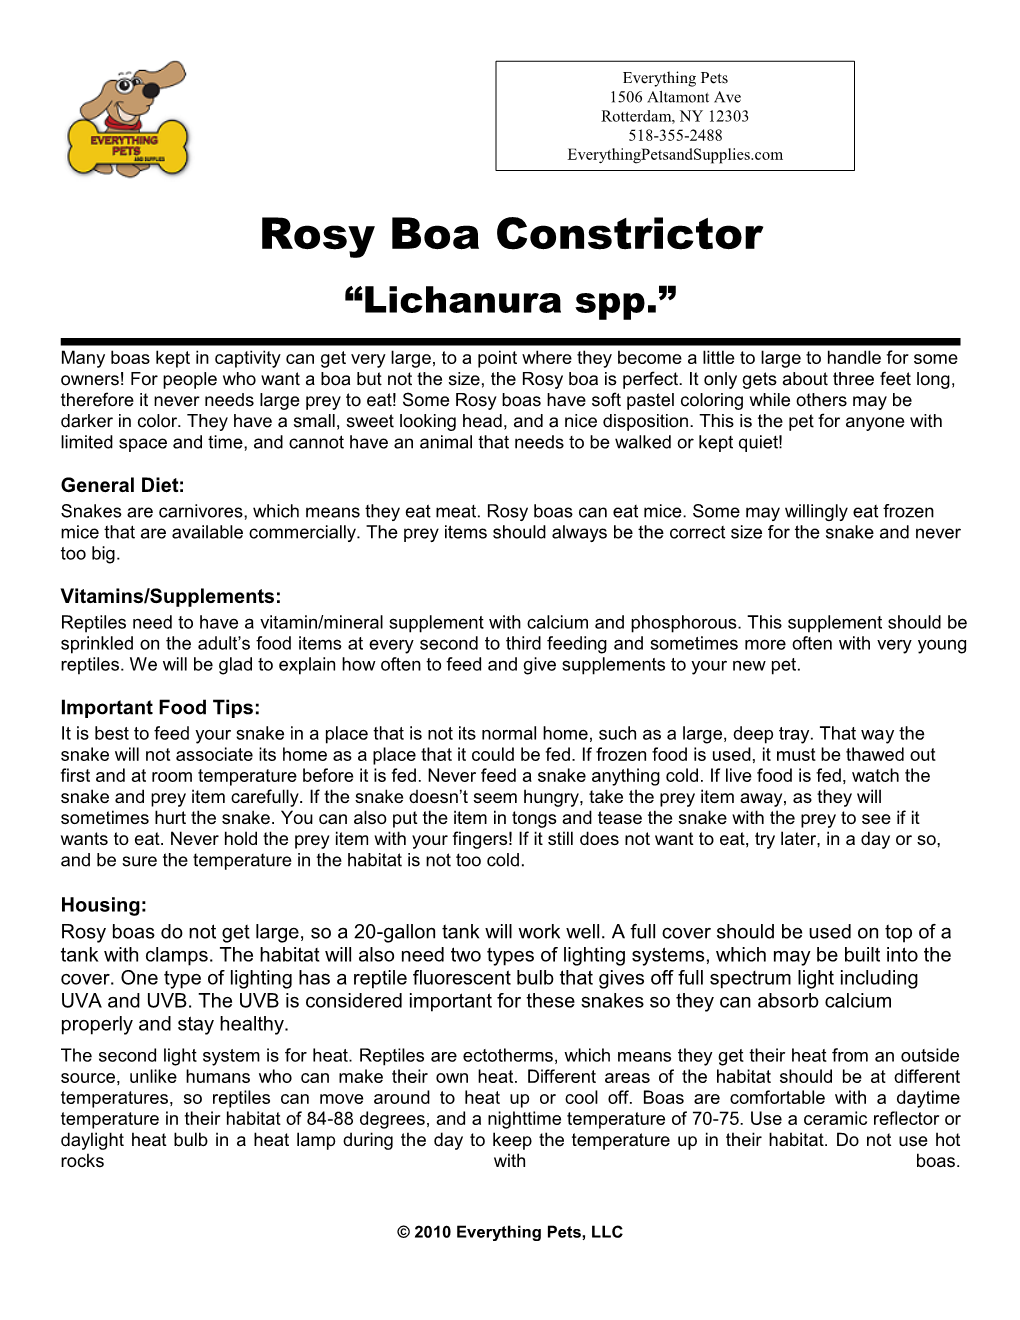 Rosy Boa Constrictor